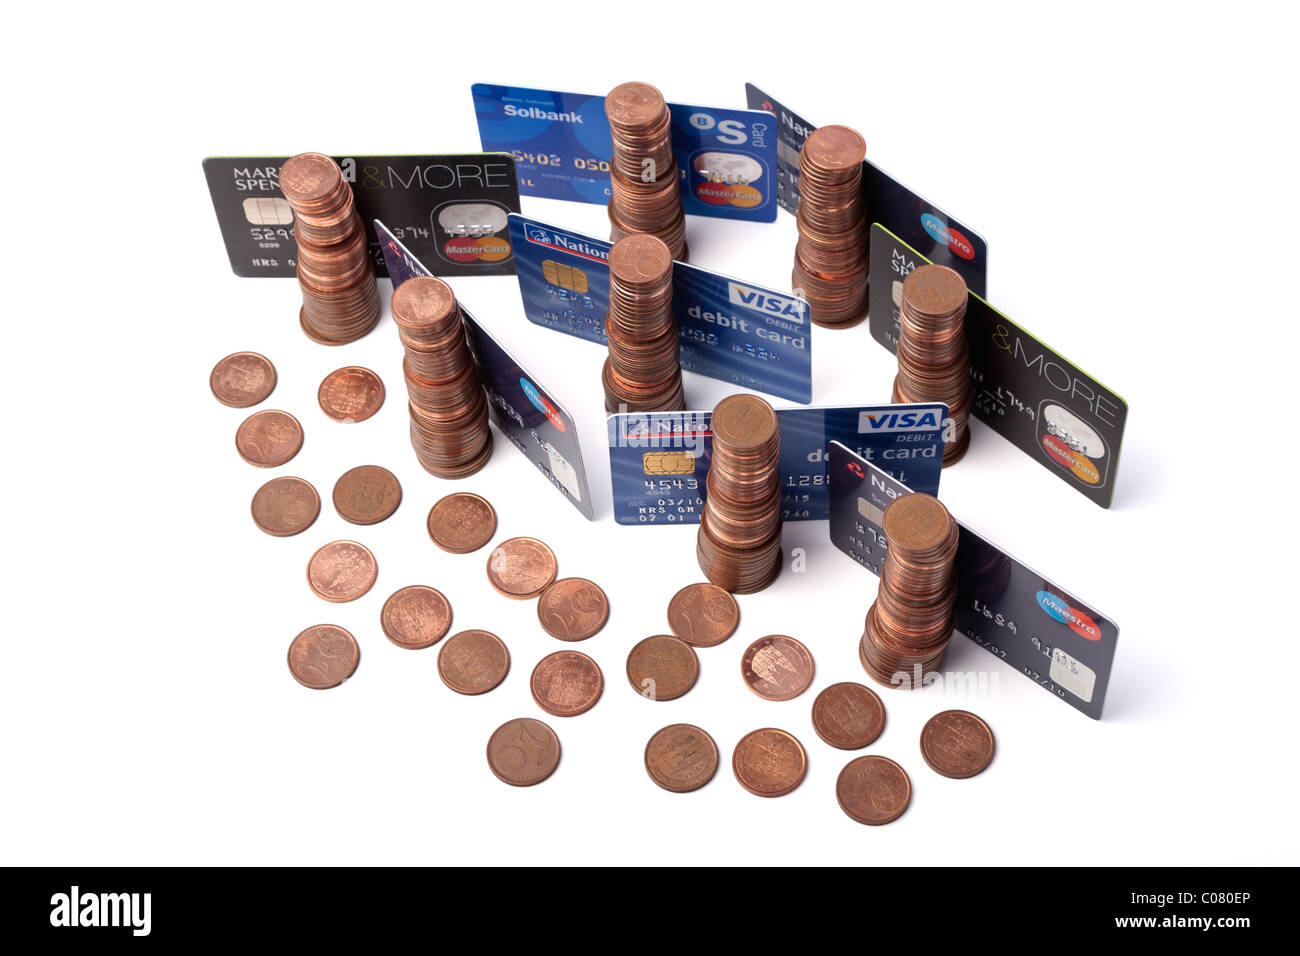 Tarjetas de crédito y débito con pilas de céntimos en monedas. Concepto, finanzas, crédito, Foto de stock